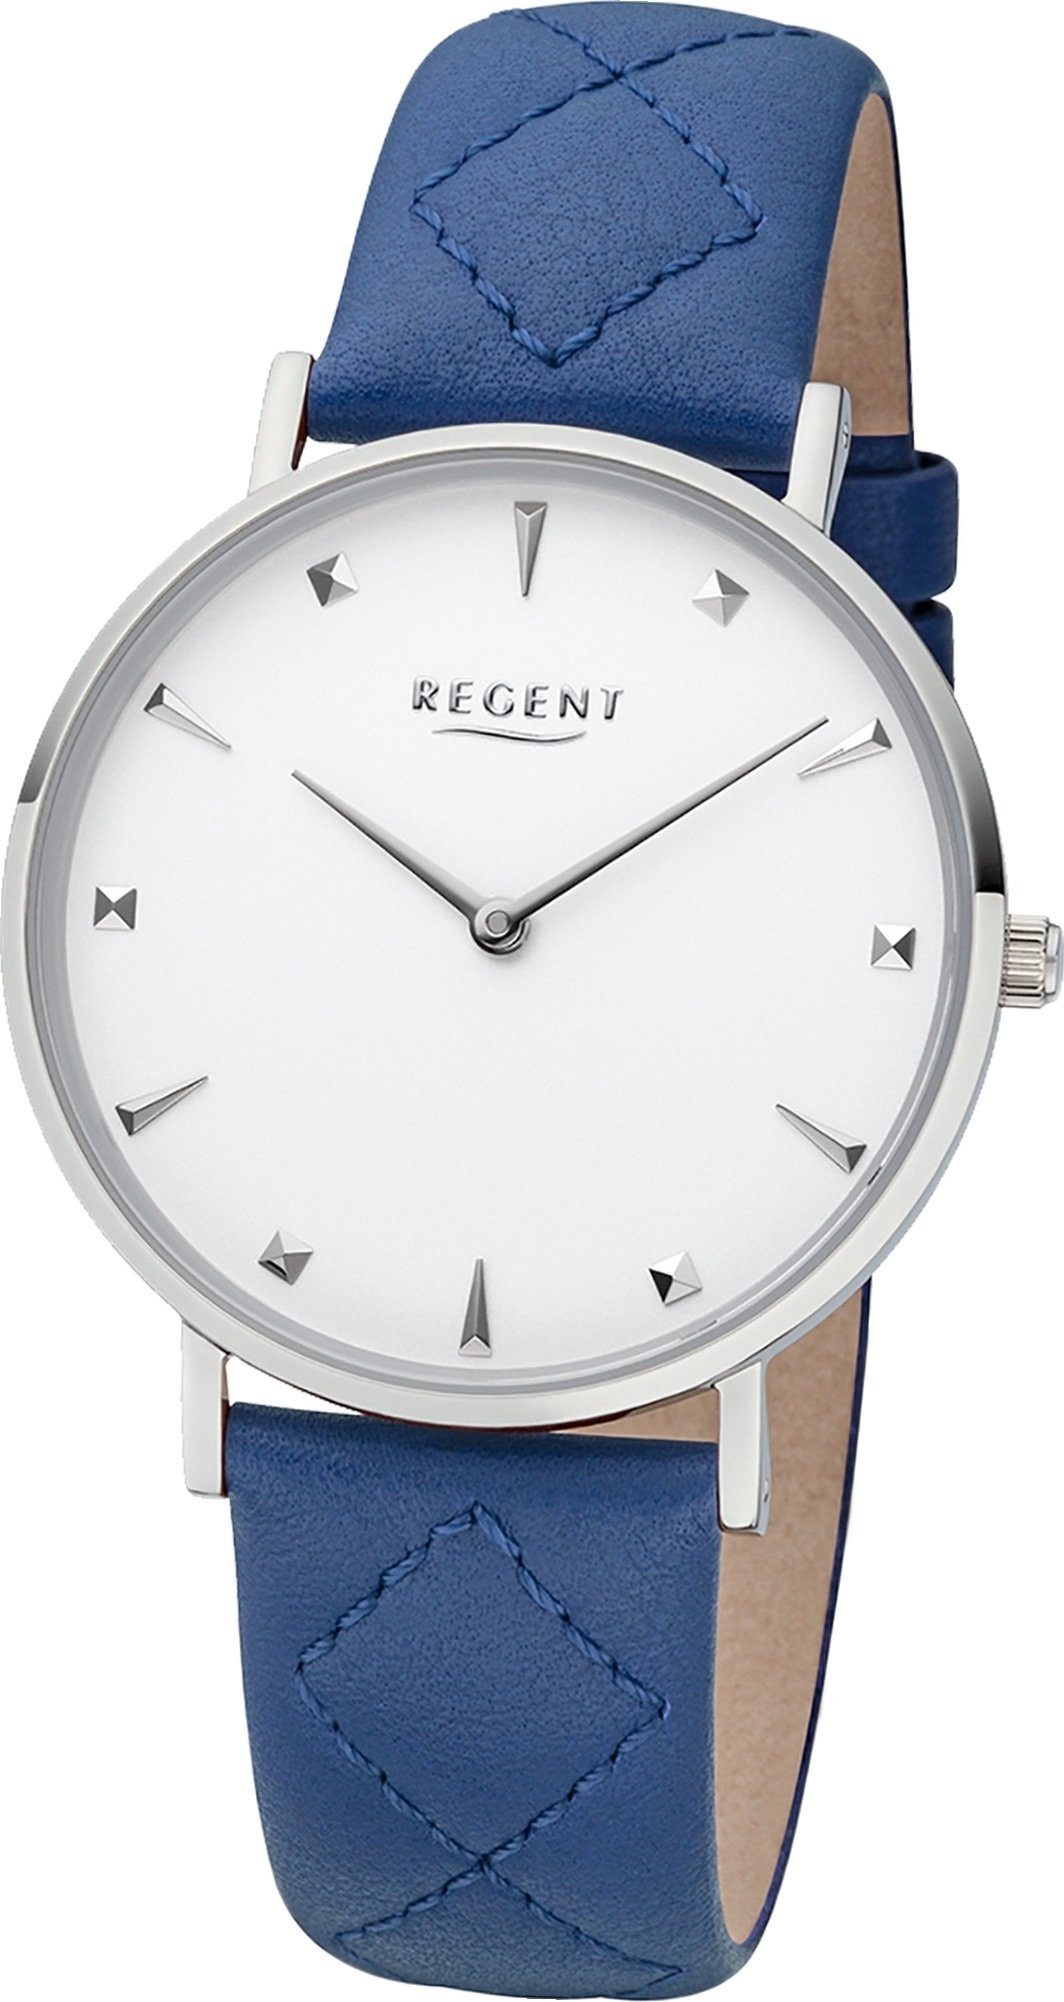 Regent Quarzuhr Regent Leder Damen Uhr BA-573 Quarz, Damenuhr Lederarmband  blau, rundes Gehäuse, mittel (ca. 36mm) | Quarzuhren